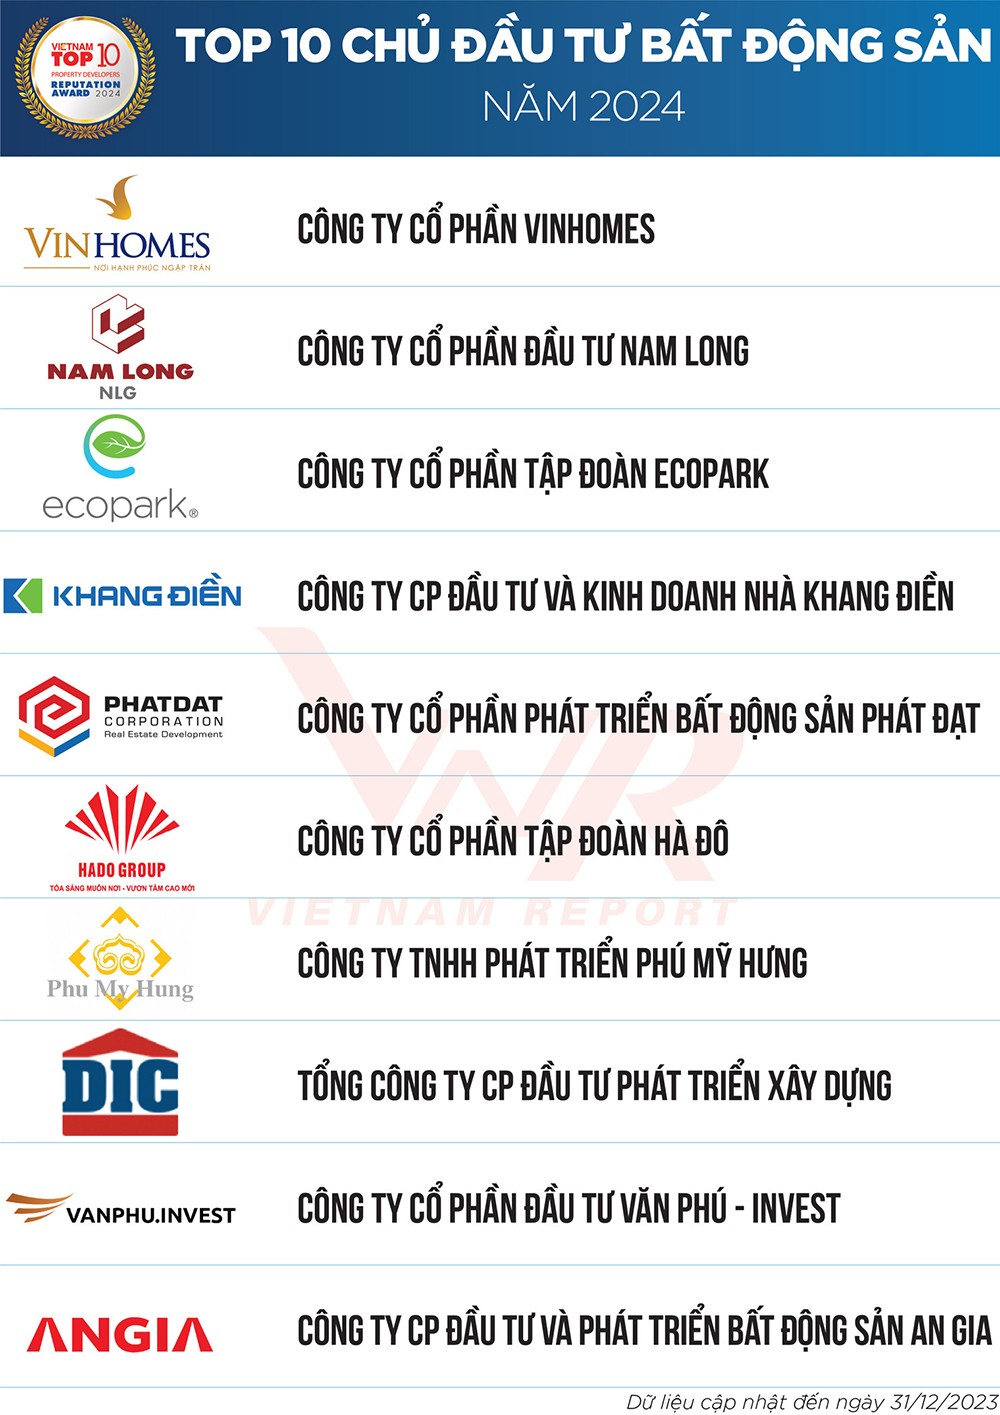 Top 10 Chủ Đầu tư BĐS năm 2024 do Vietnam Report bình chọn